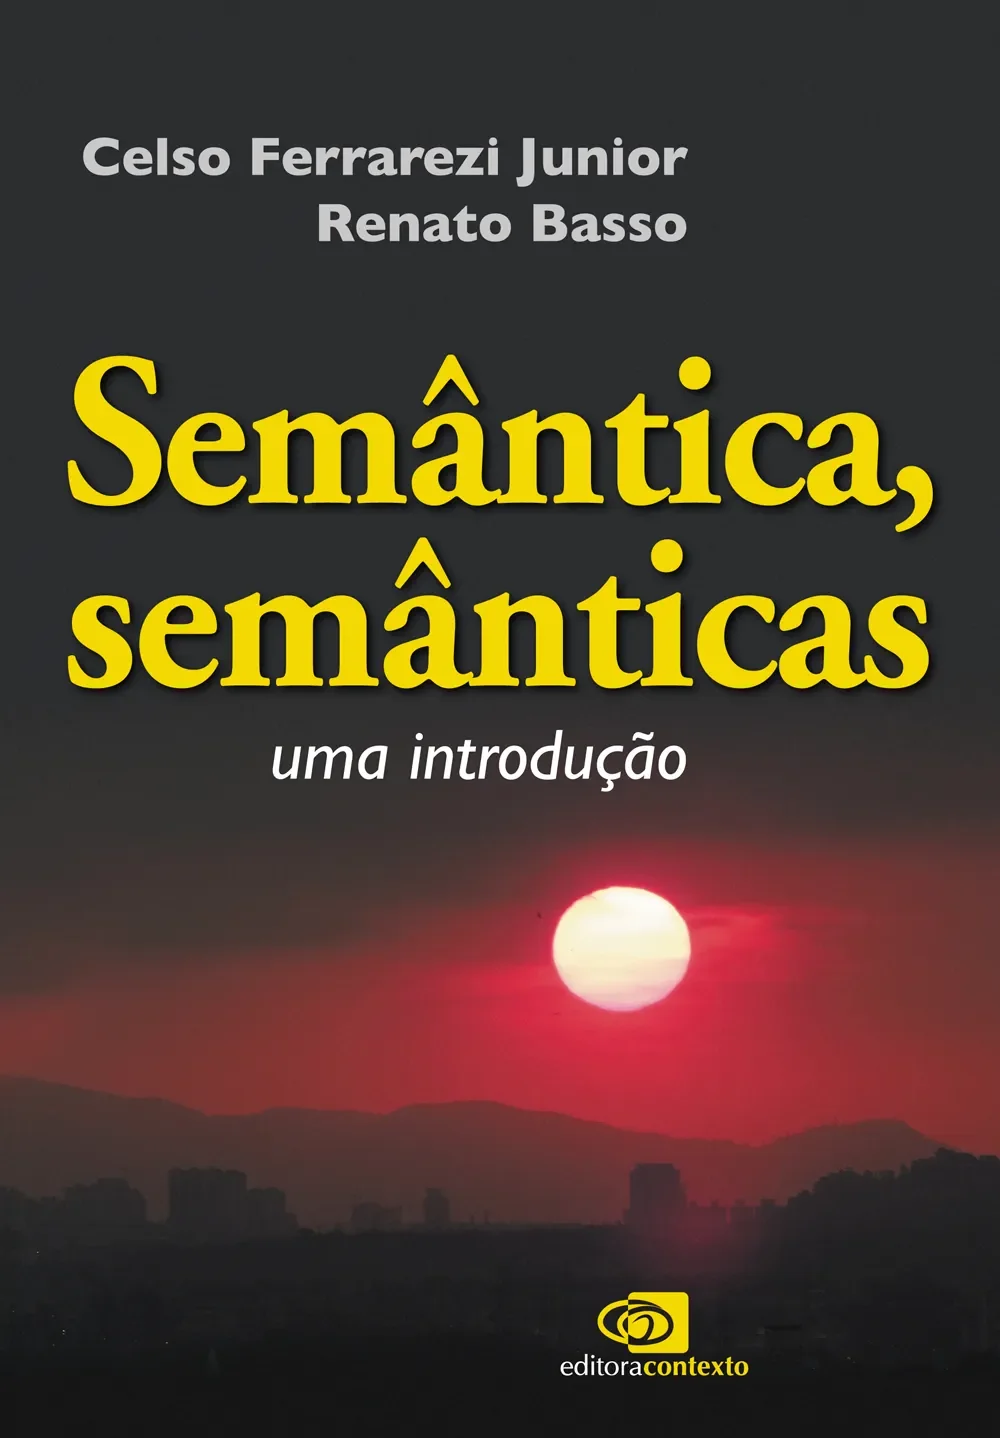 Ygor Mello Senna Florentino - Samuel Vagner - Rio de Janeiro, Rio